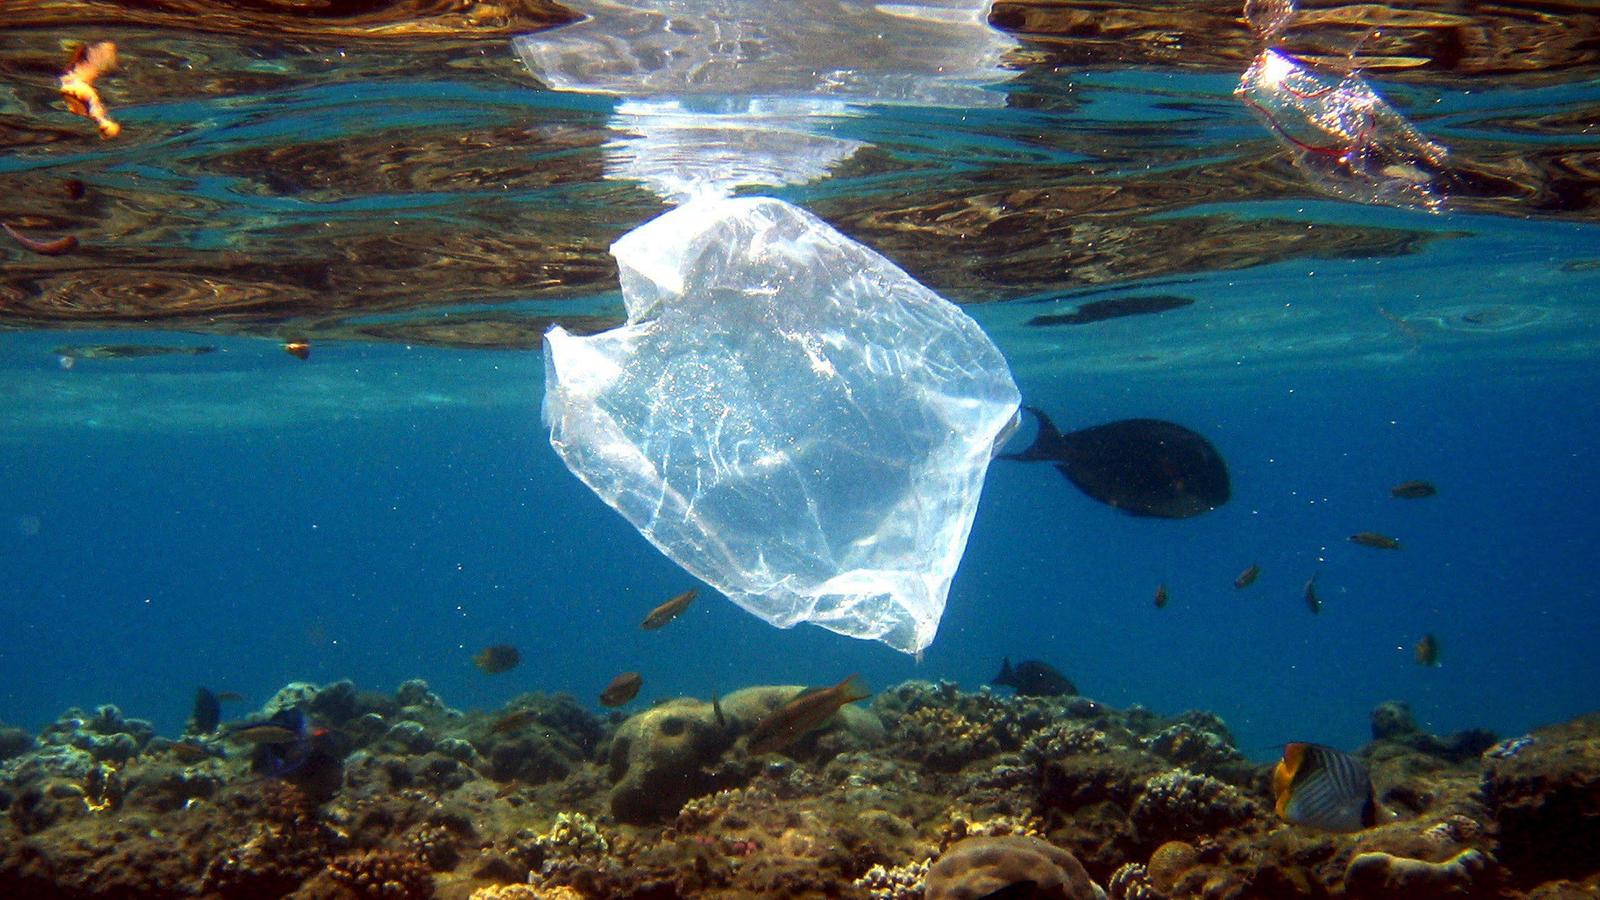 ARCHIV - Eine Plastiktüte schwimmt über Korallen im Roten Meer in Ägypten am 01.08.2007. Die Vermüllung der Meere steht im Mittelpunkt einer am 30.05.2017 beginnenden dreitägigen Konferenz mit Vertretern der G20-Staaten in Bremen. (zu dpa "Konferenz 